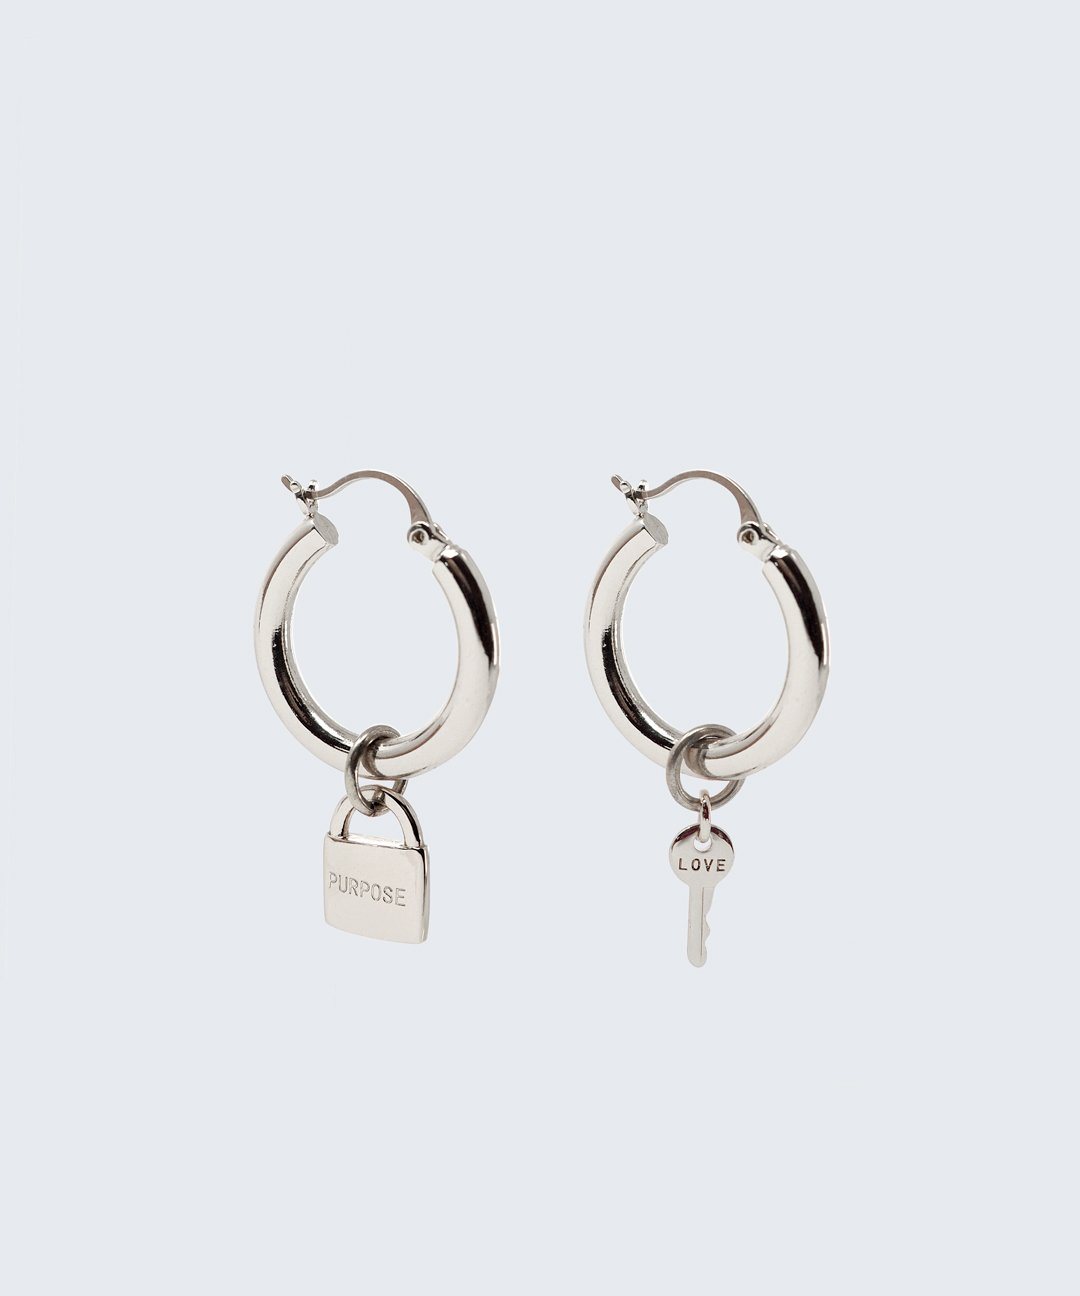 Riji Earrings Earrings The Giving Keys LOVE + PURPOSE Silver 